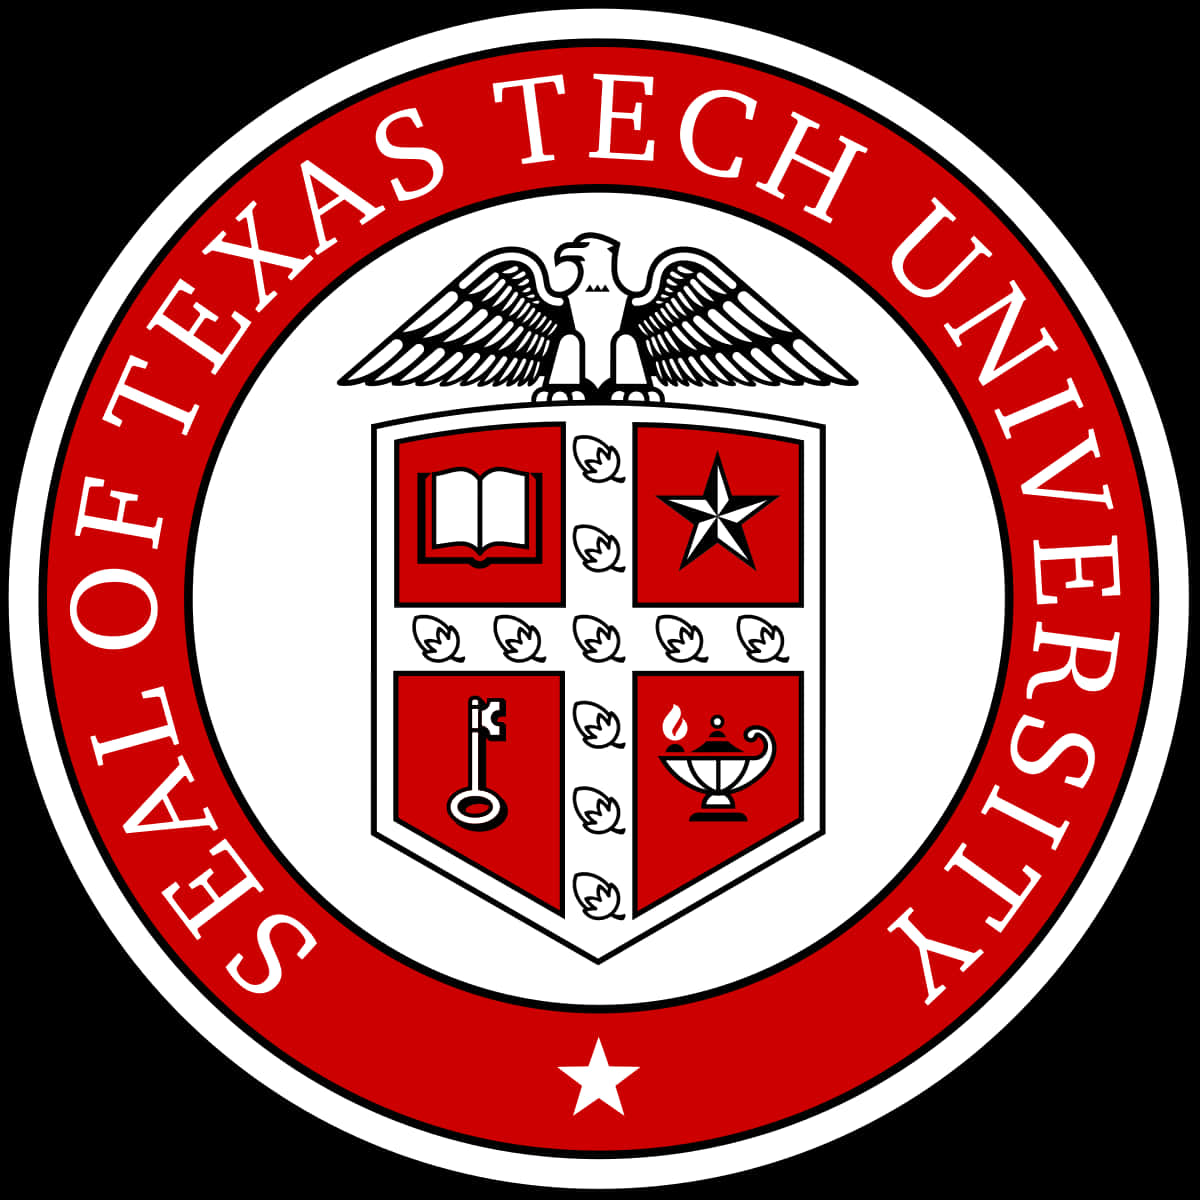 Siegelder Texas Tech University Wallpaper